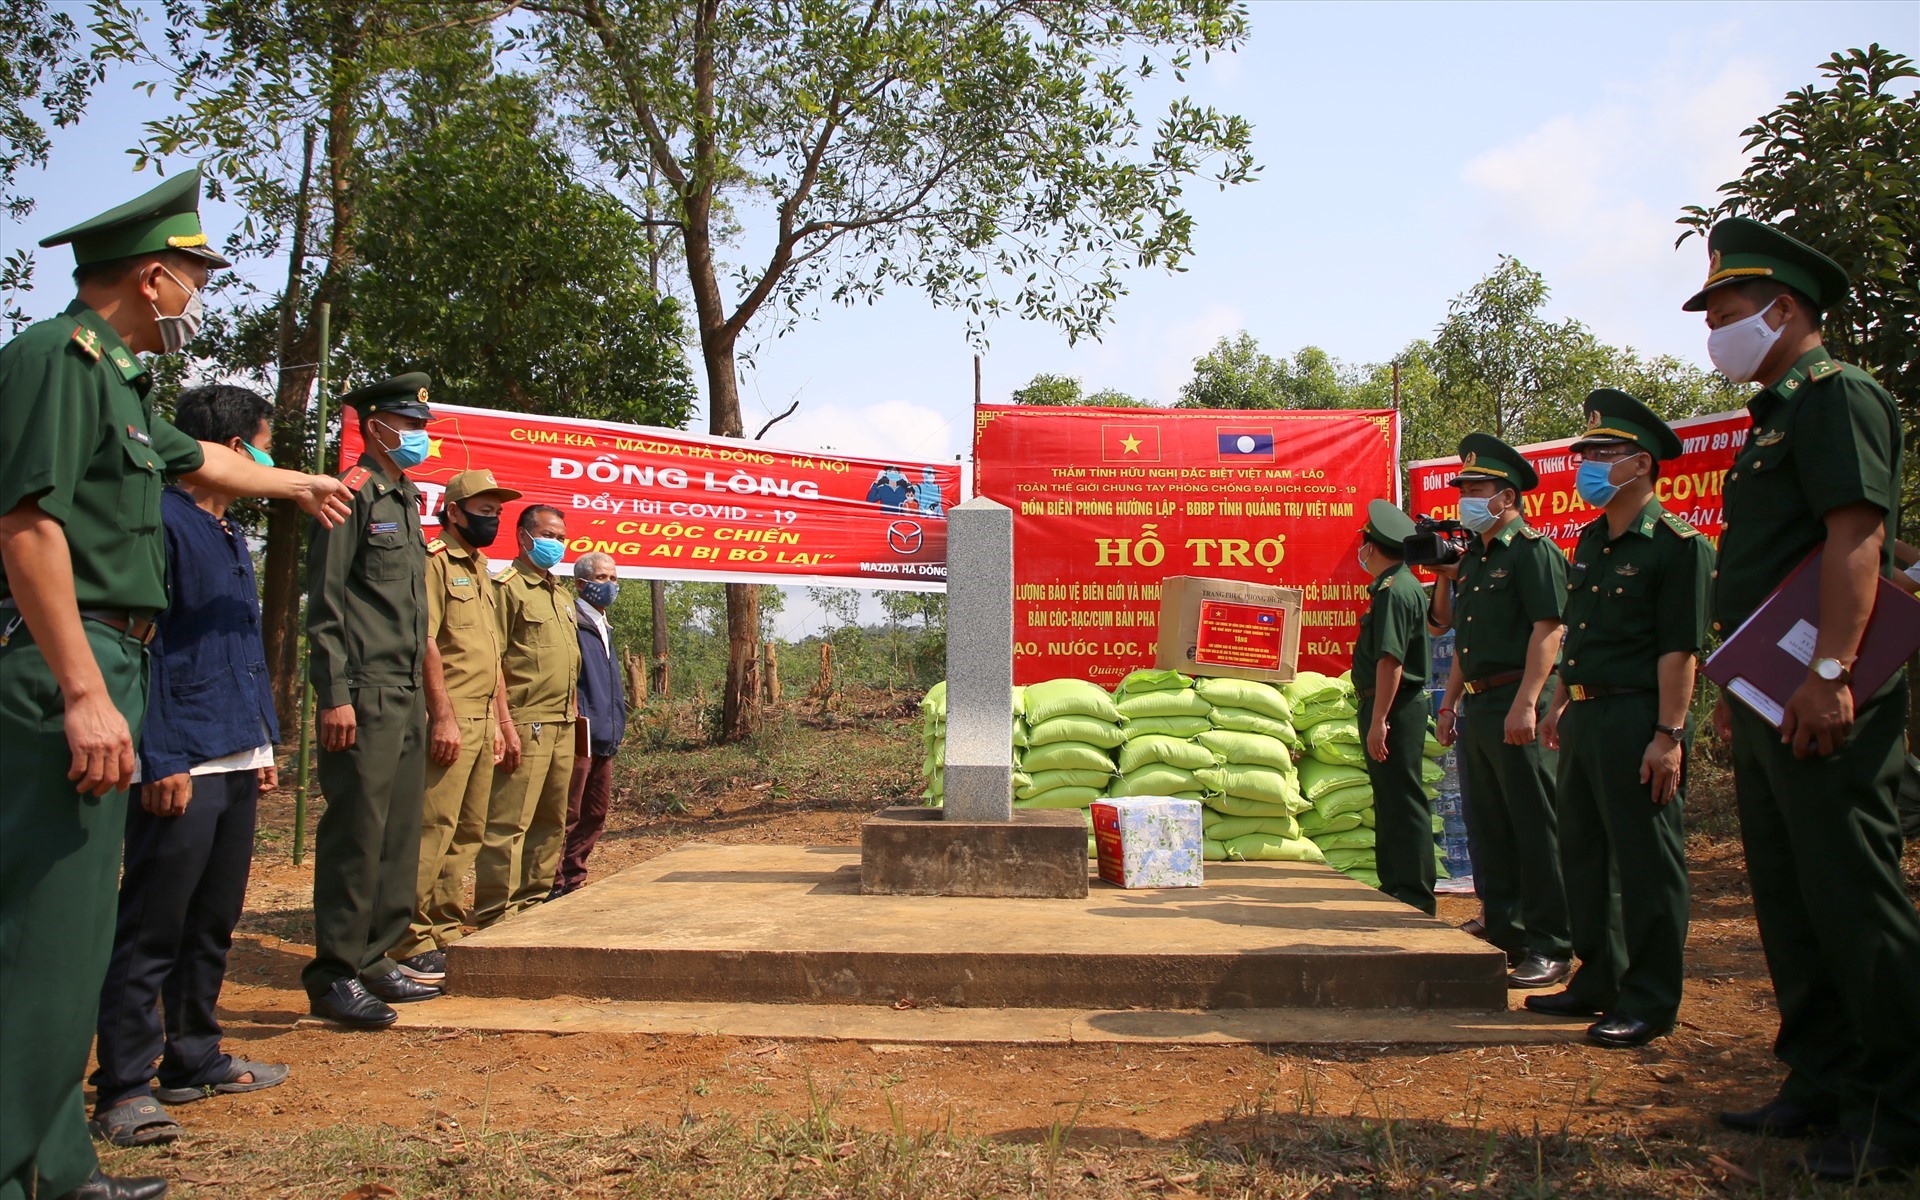 Vào ngày 12.4, tại khu vực biên giới Việt - Lào ở tỉnh Quảng Trị, lãnh đạo Biên phòng Quảng Trị, Đồn Biên phòng Hướng Lập đã tổ chức tặng quà cho lực lượng bảo vệ biên giới nước tiếp giáp và người dân Lào ở dọc biên.